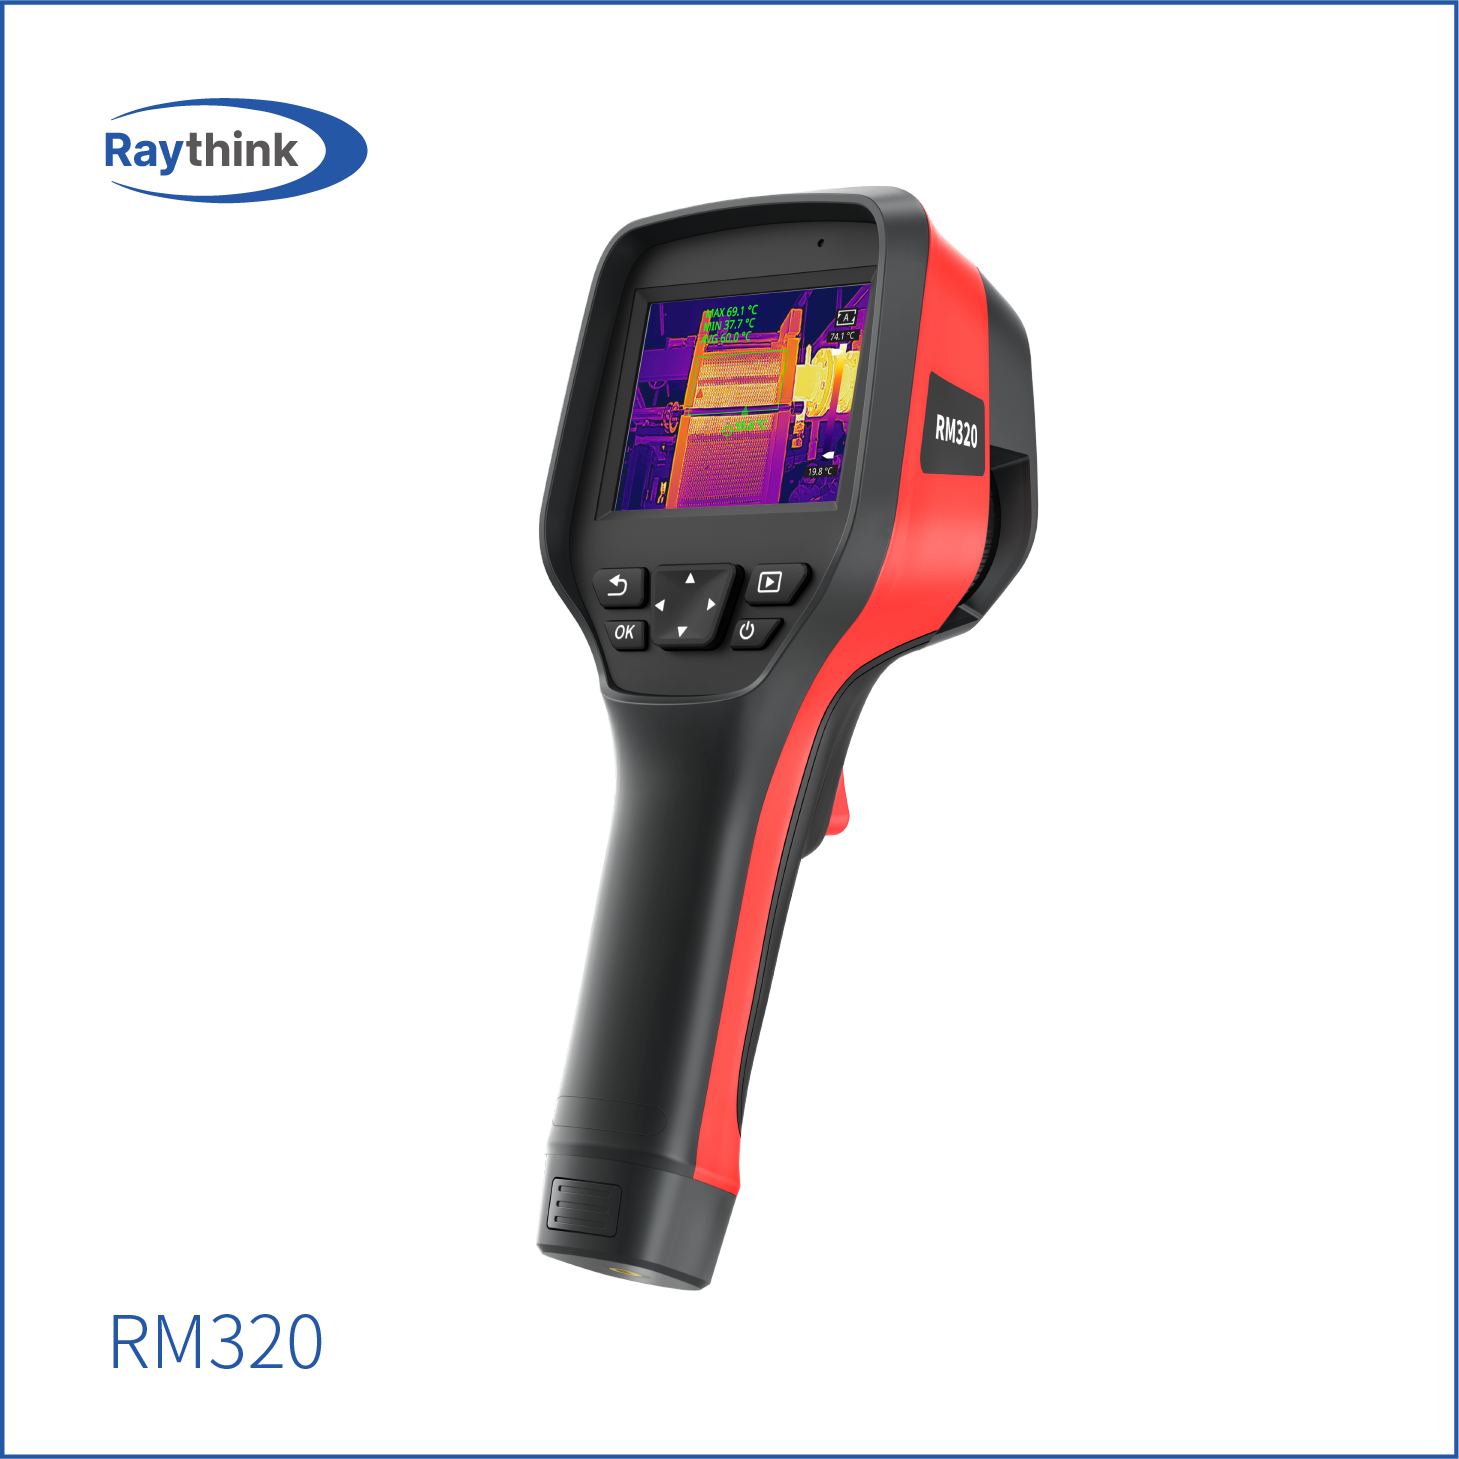 红外热像仪 RM320 手持测温热像仪